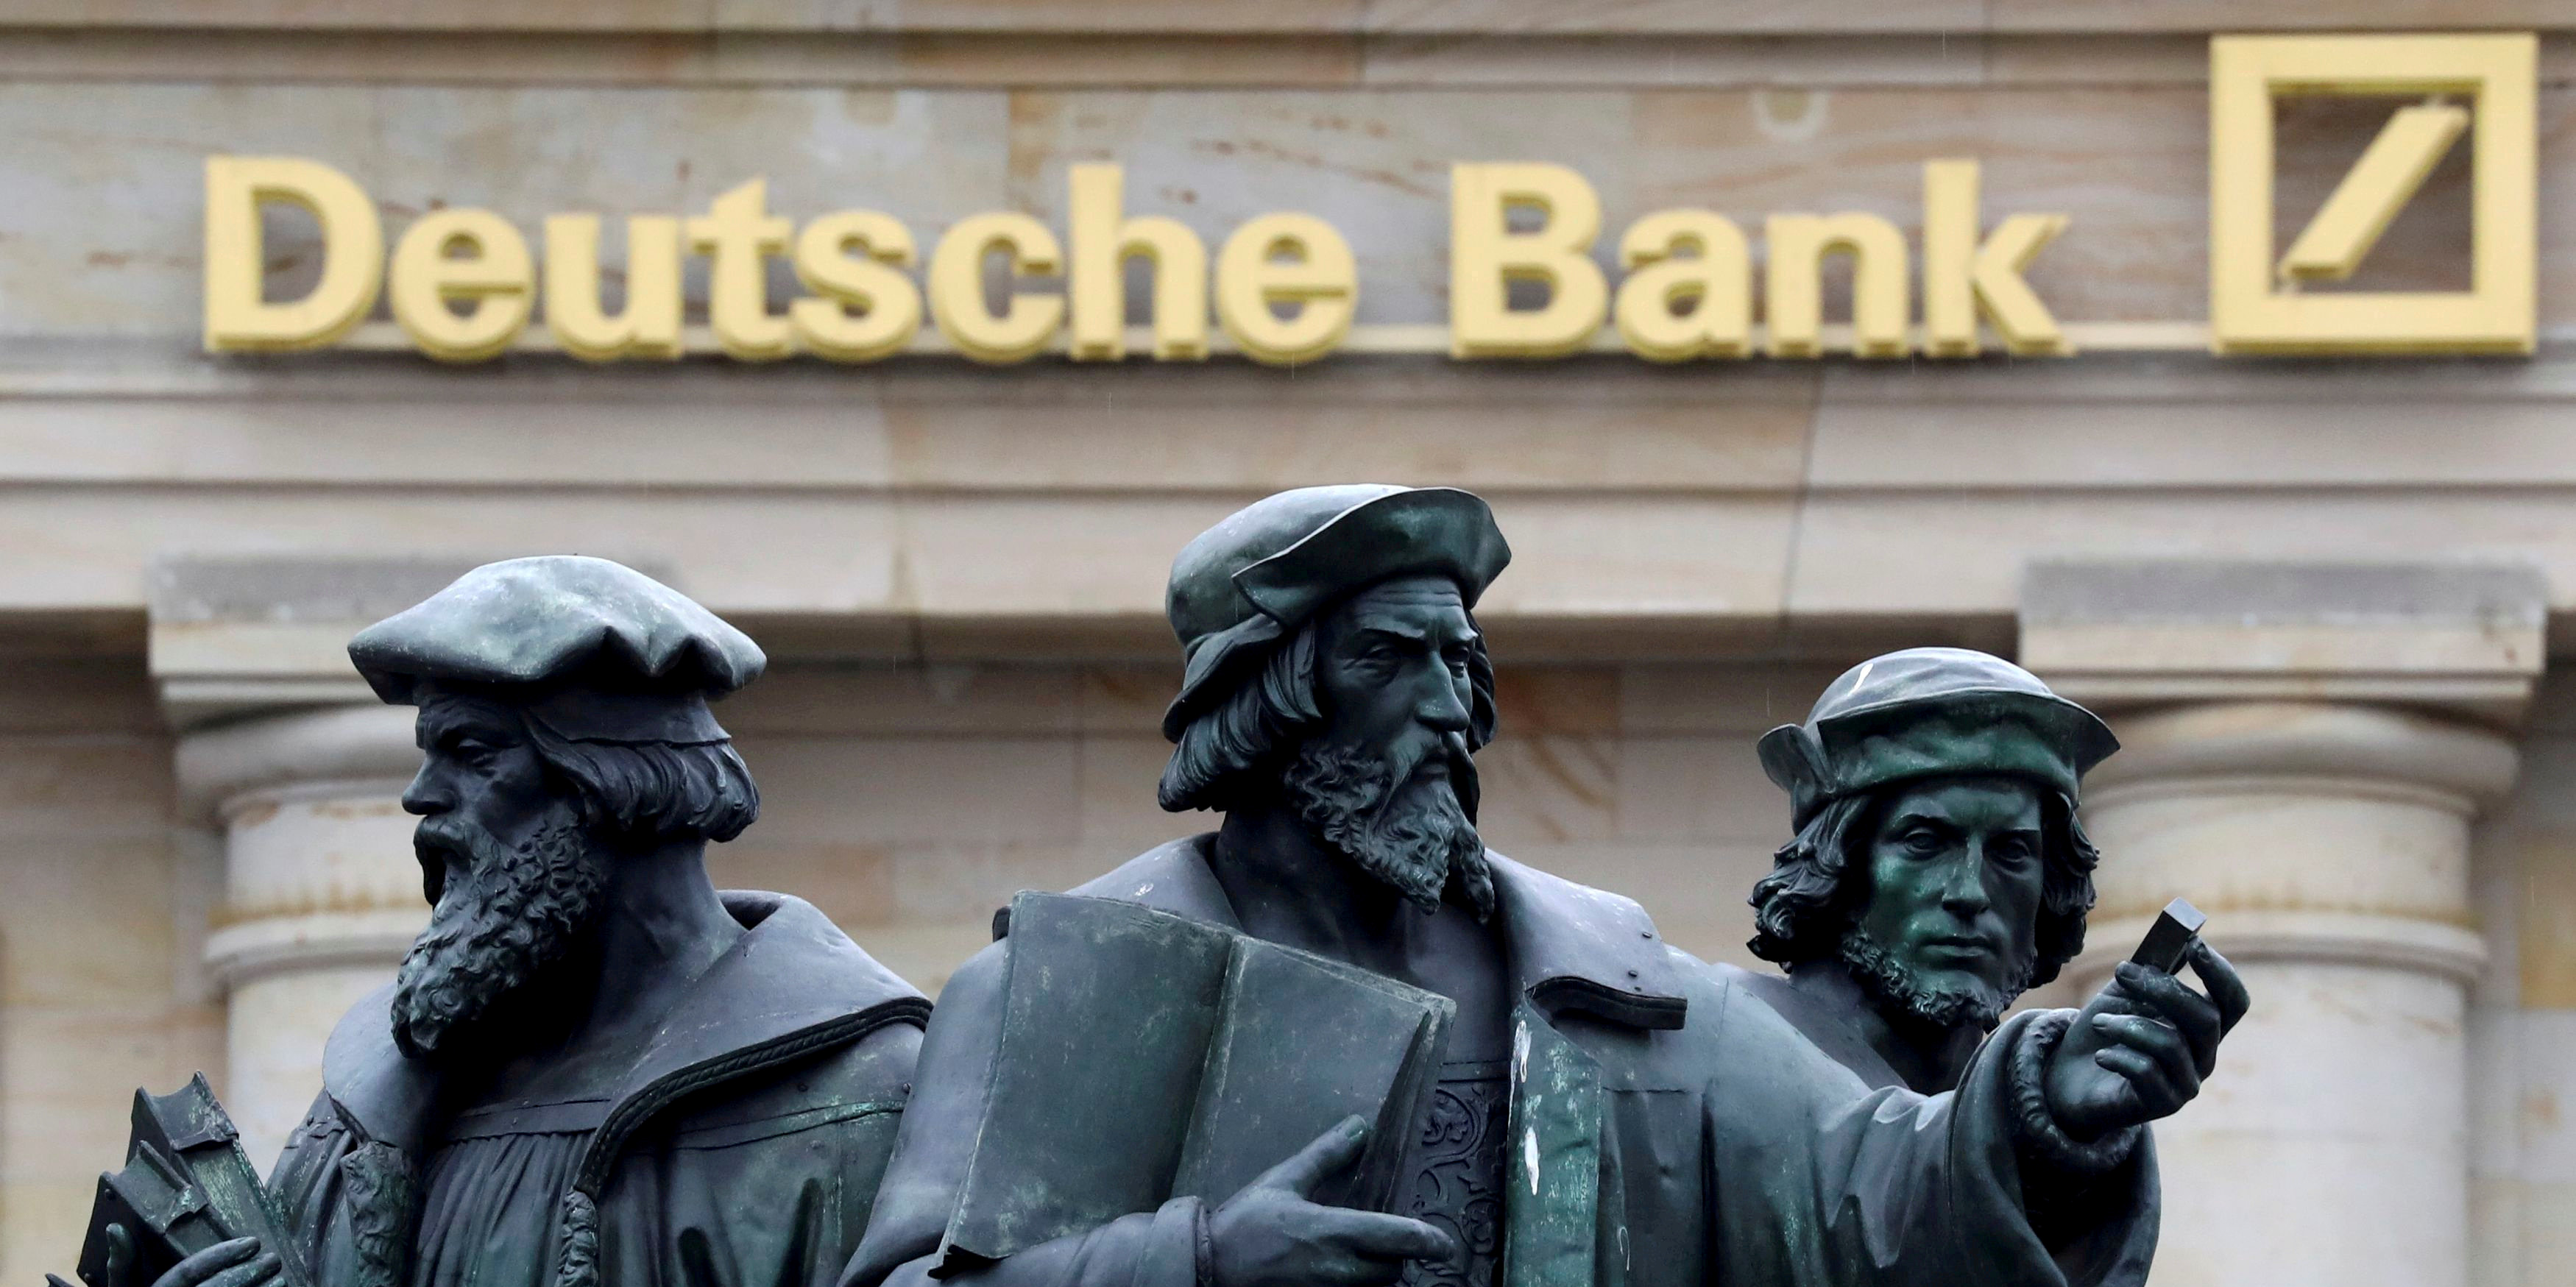 Deutsche Bank lie les gains de ses chefs à des critères sociaux et environnementaux